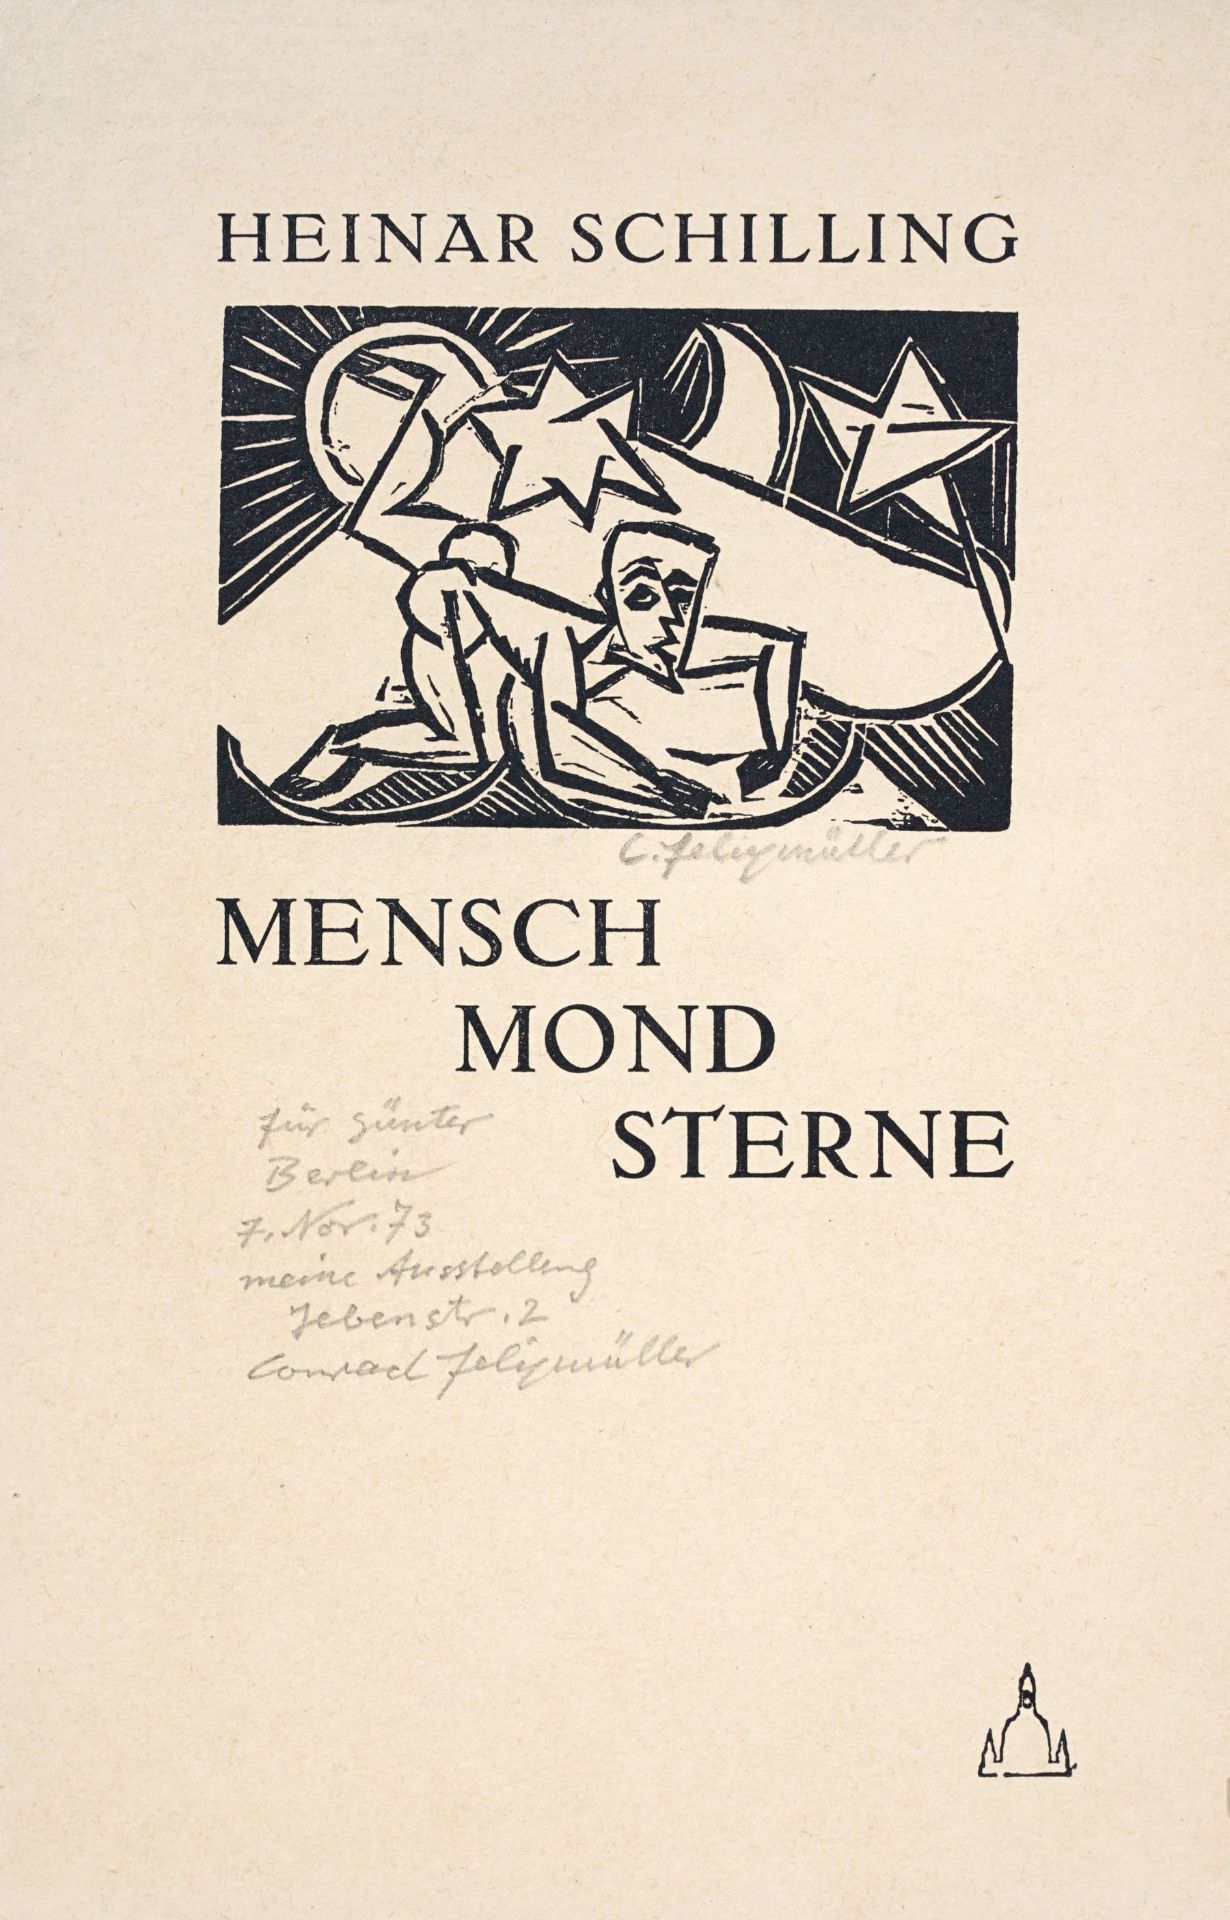 Conrad Felixmüller "Mensch, Mond, Sterne". 1917.